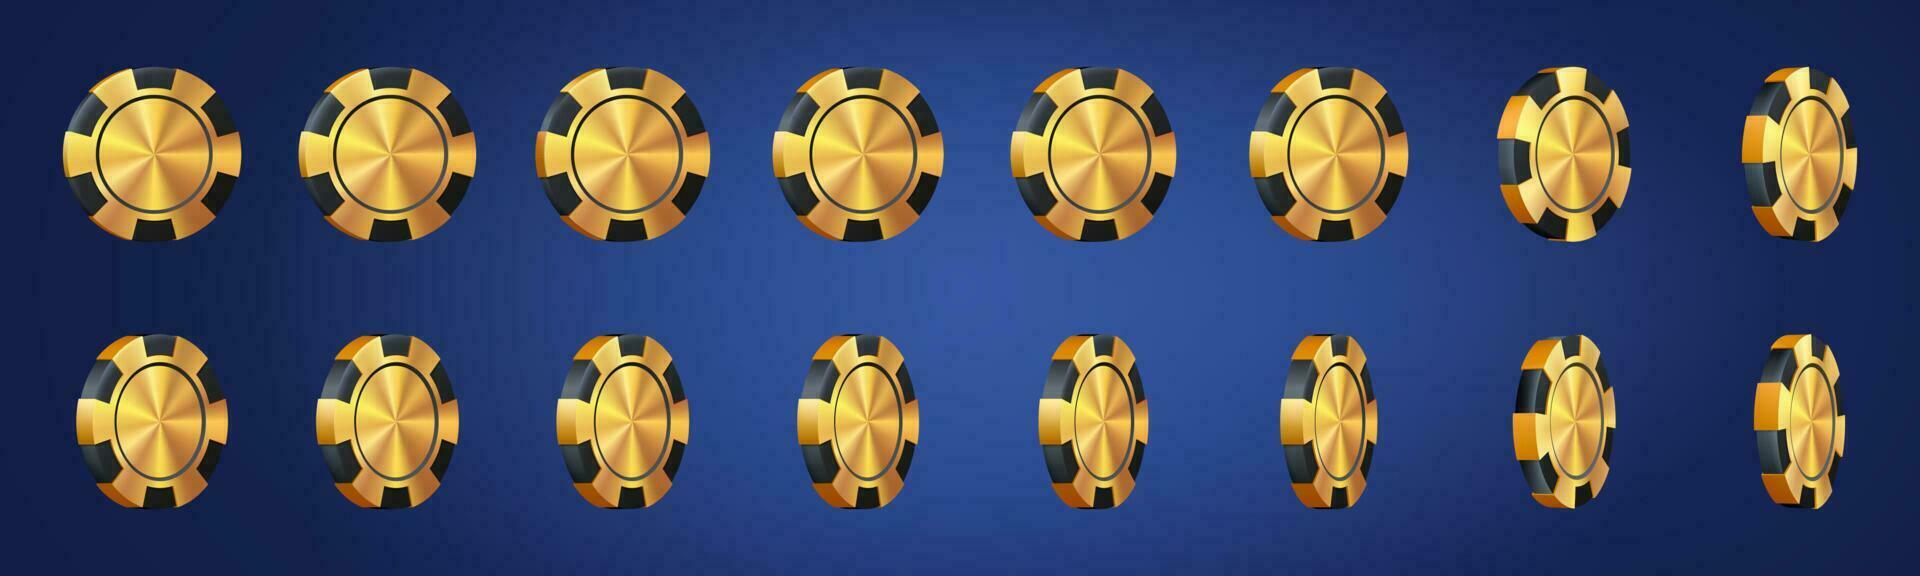 3d gyllene kasino klubb poker chip rotation vektor